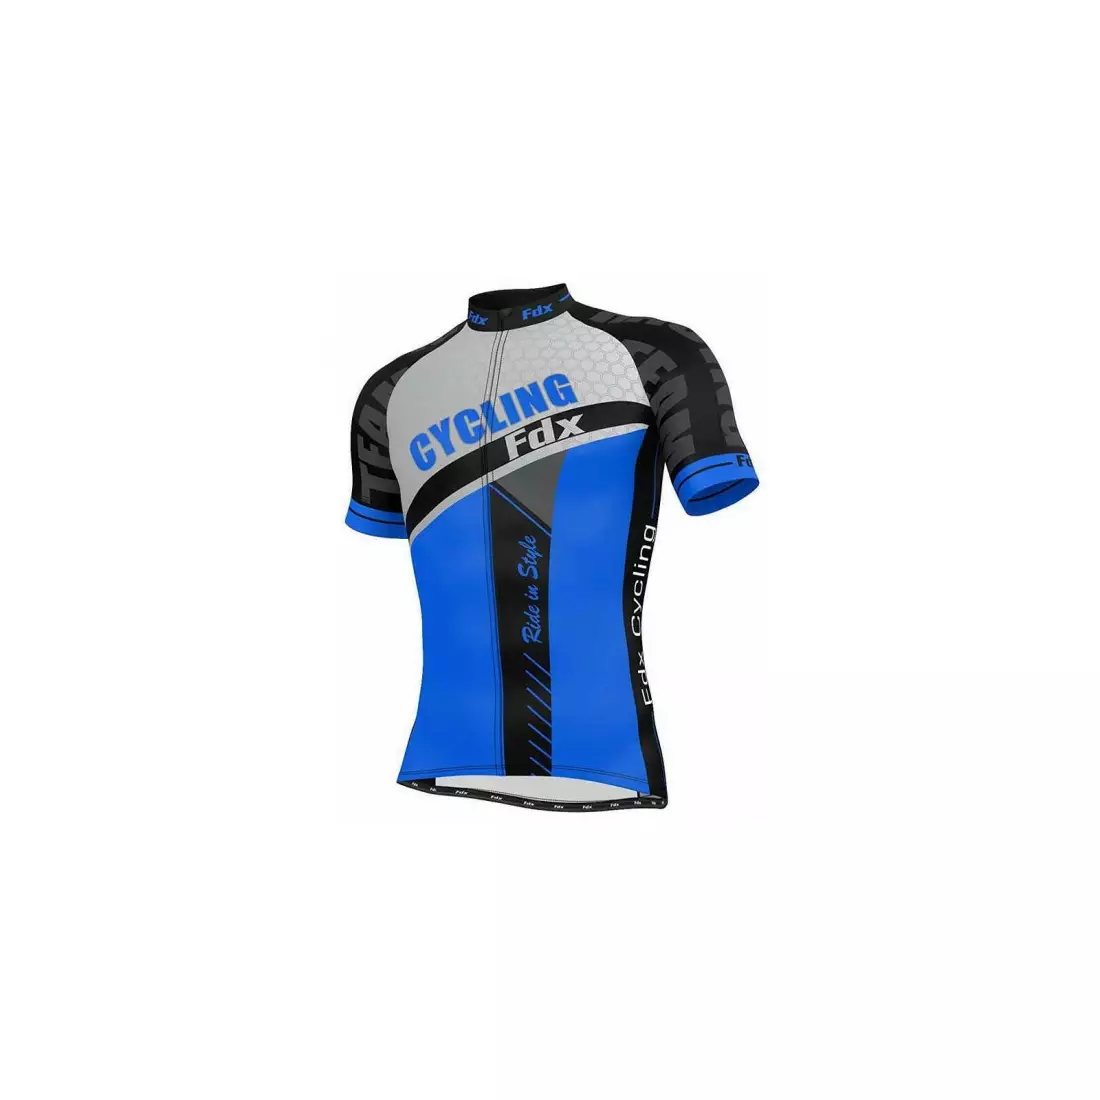 FDX 1070 pánská cyklistická sada tričko + kraťasy s náprsenkou, modrá